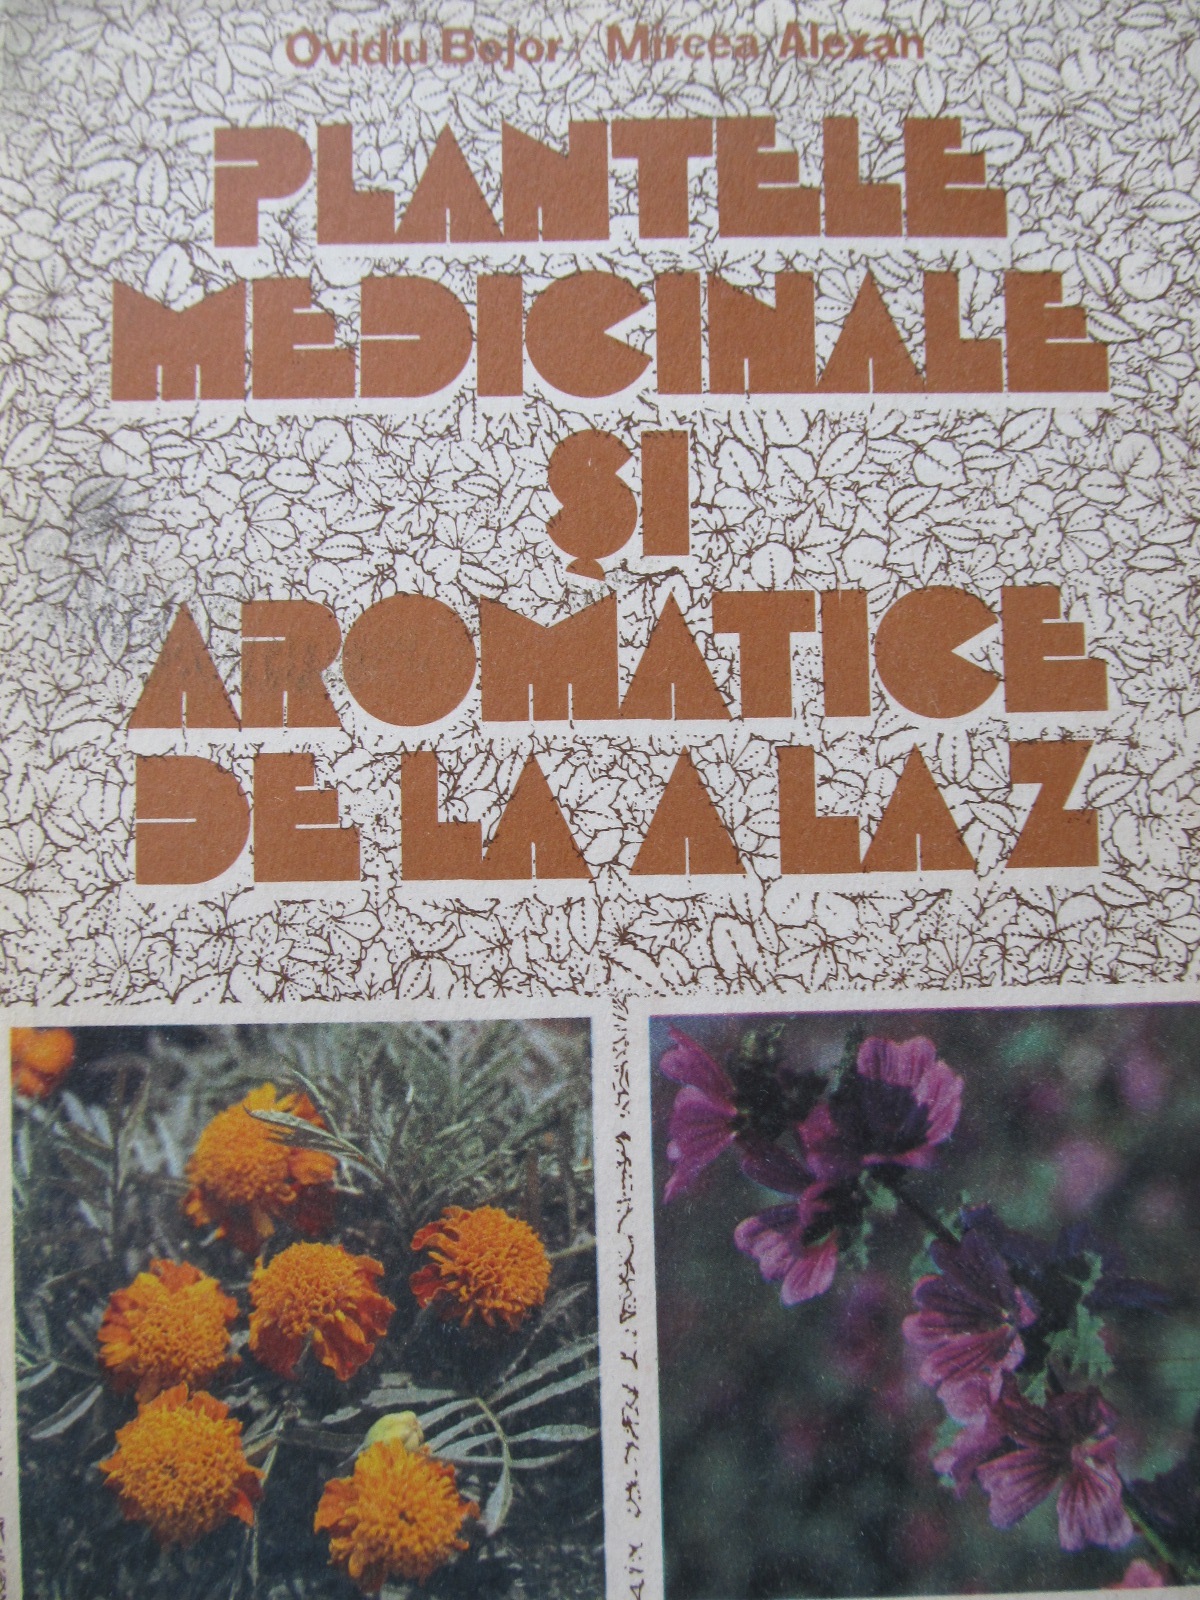 Plantele medicinale si aromatice de la A la Z - Ovidiu Bojor , Mircea Alexan | Detalii carte